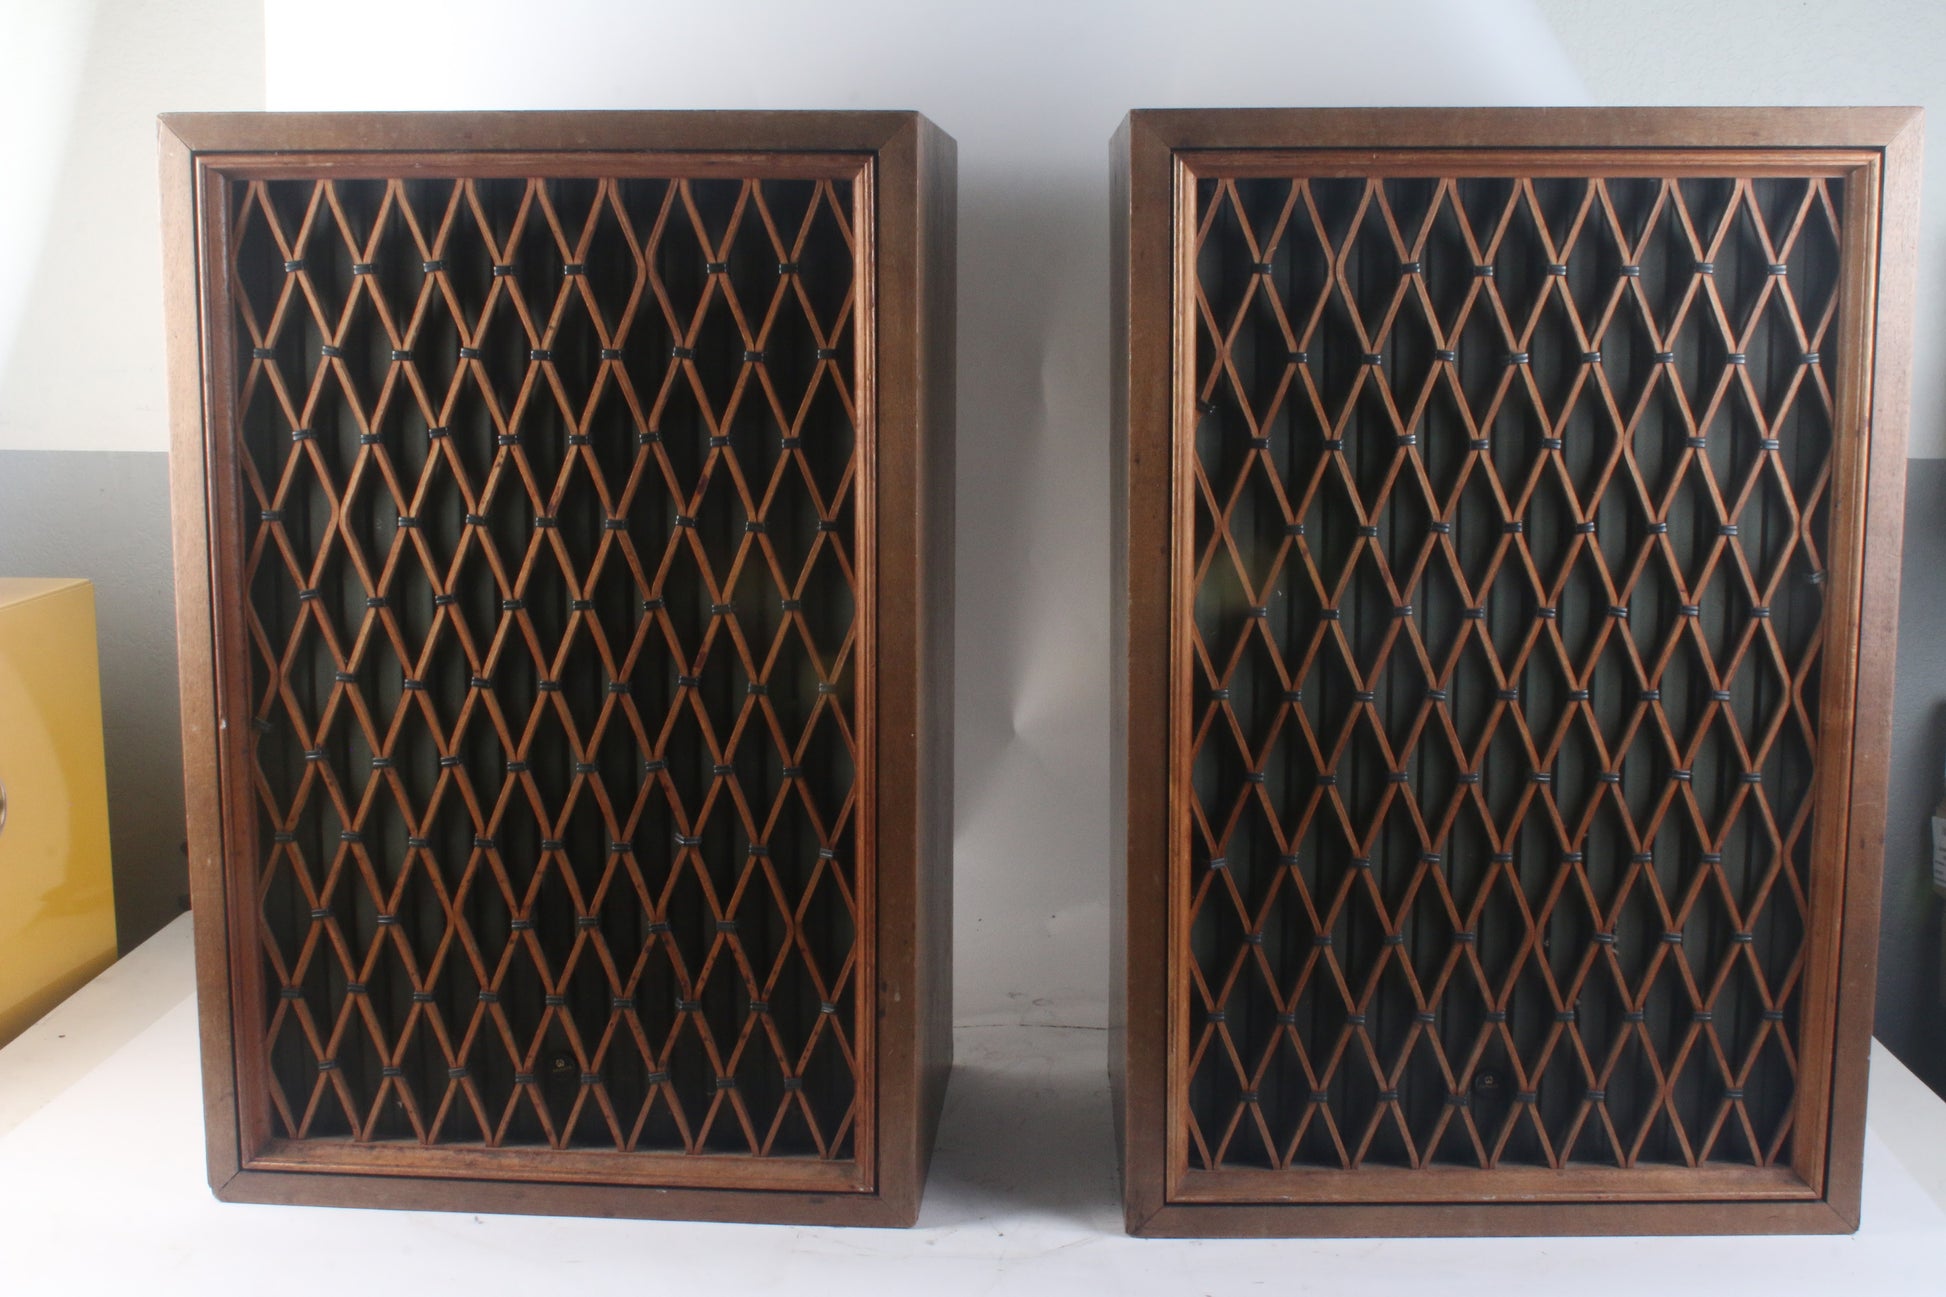 Vintage Pioneer CS-411 Vintage 2-Way Floorstanding Speakers Made